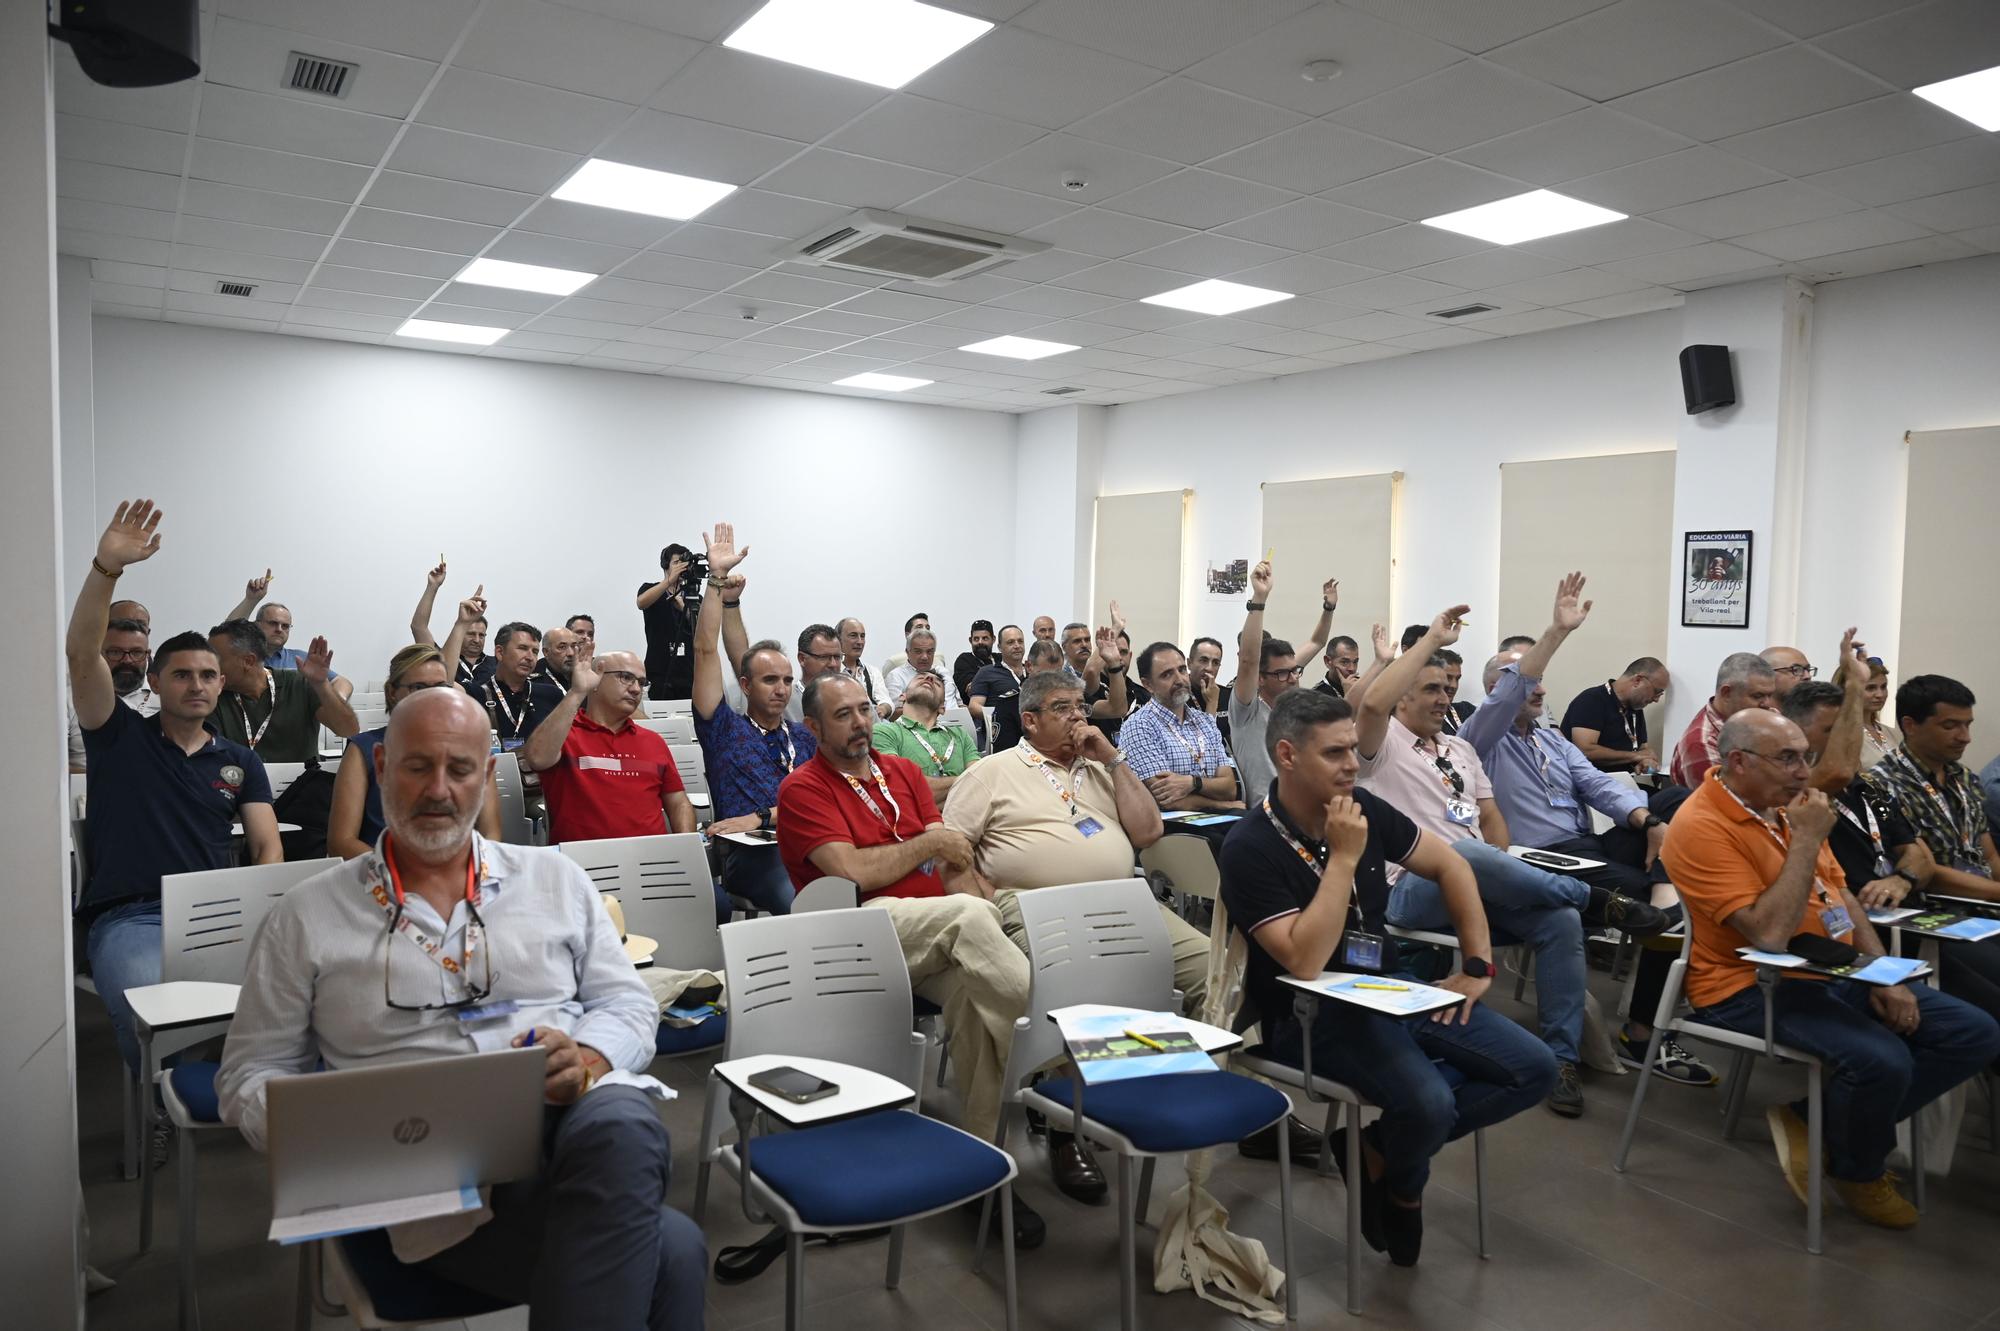 Las imágenes del primer seminario nacional en Vila-real sobre motivación para mandos de la Policía Local